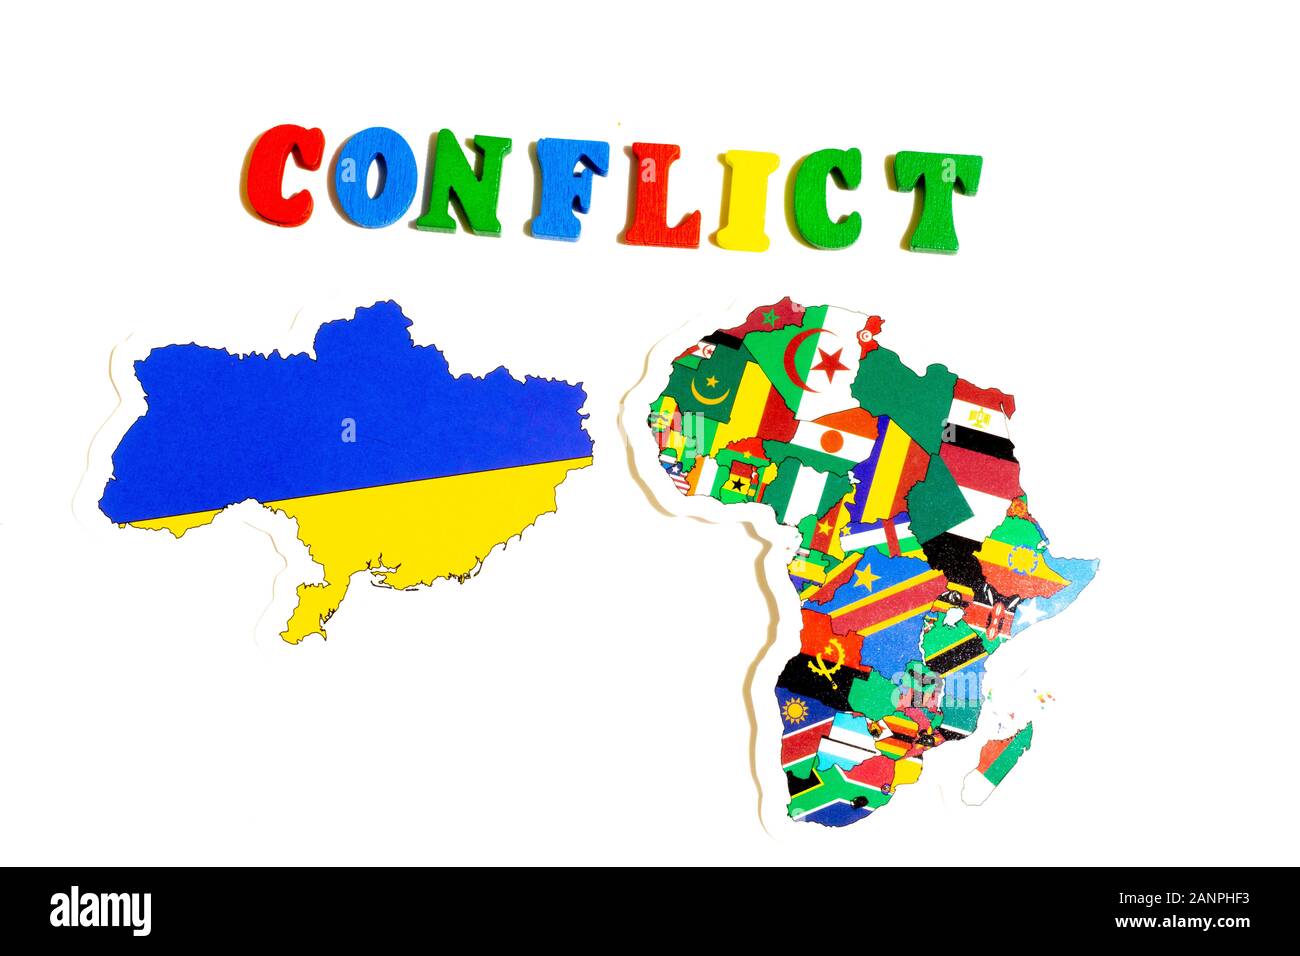 Los Angeles, Californie, États-Unis - 17 janvier 2020: Conflit ou concept de guerre en Ukraine et en Afrique. Drapeaux Nationaux, Éditorial Illustratif Banque D'Images